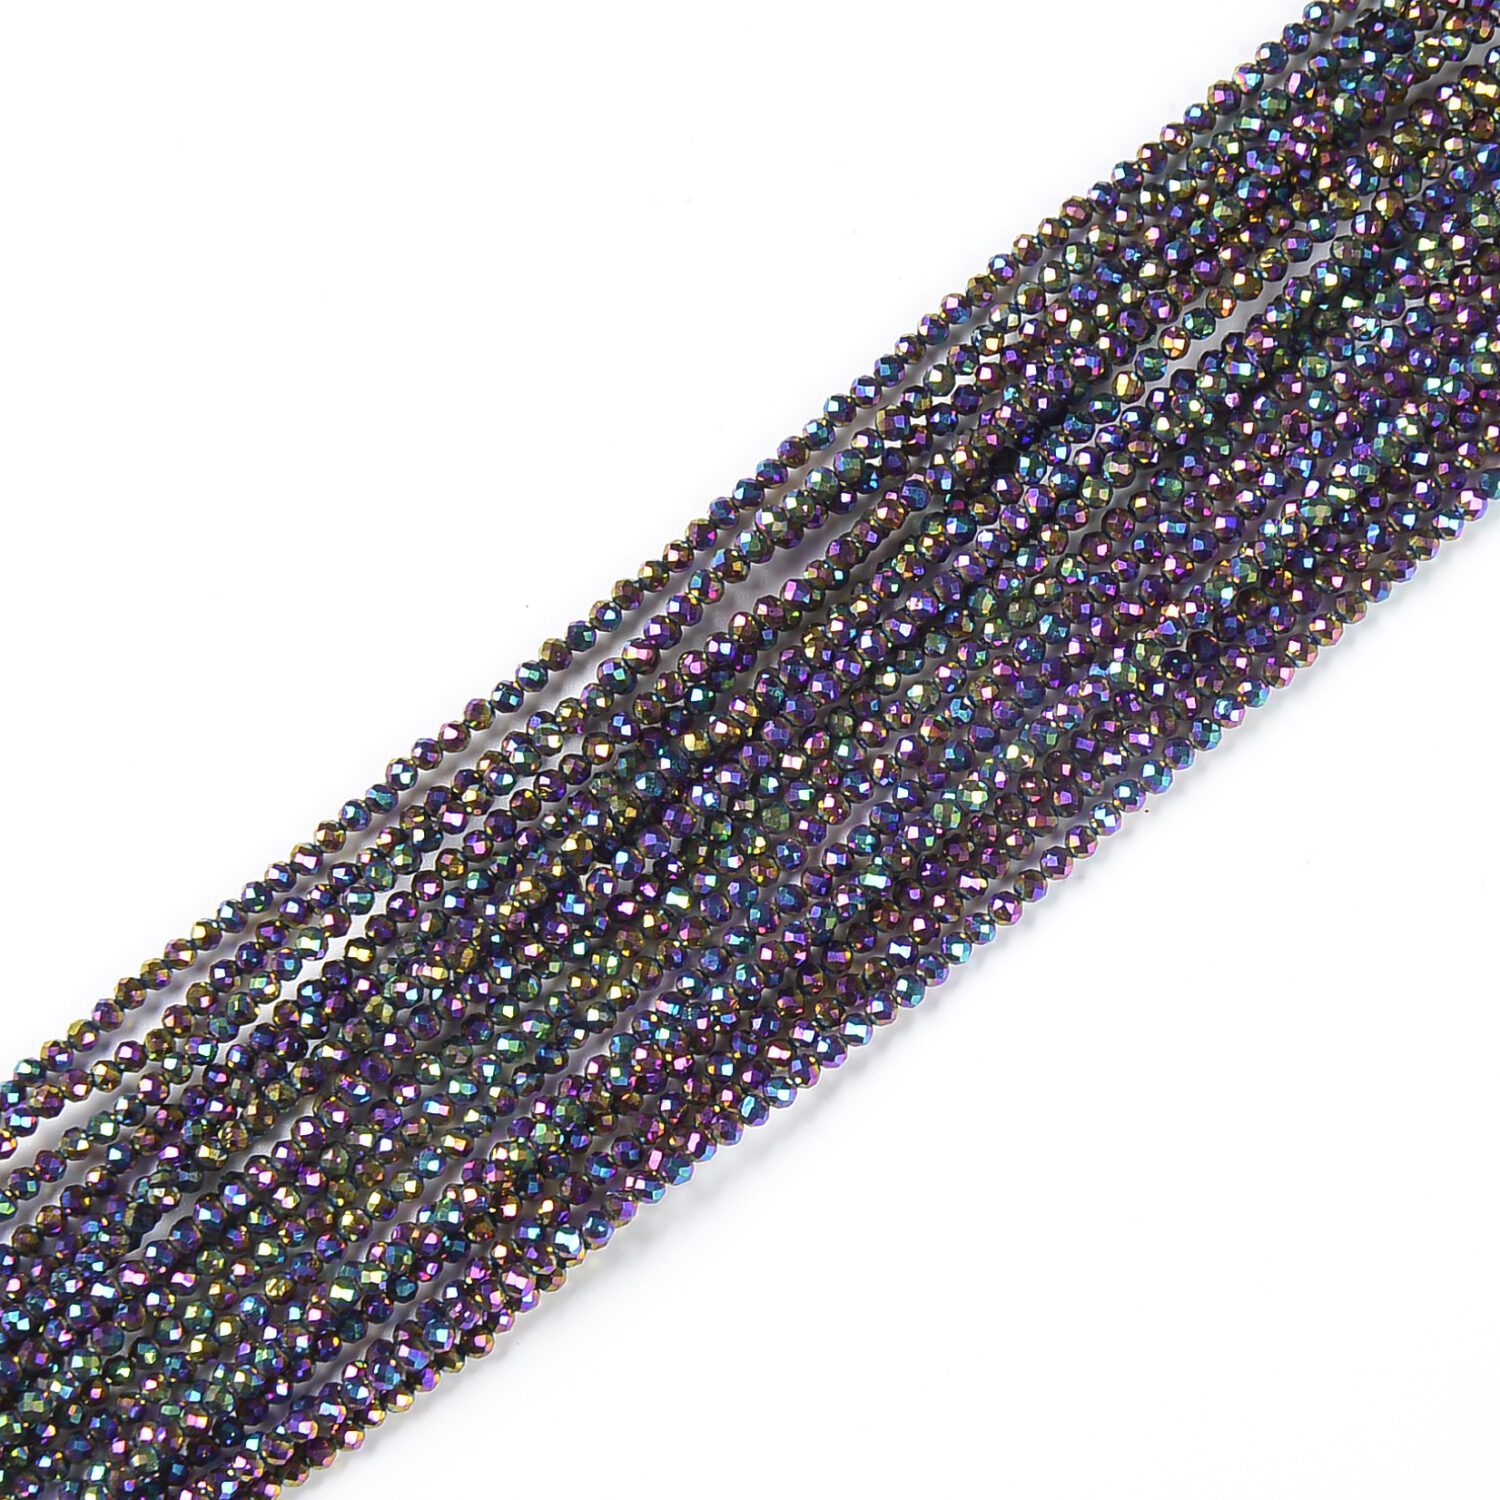 Mystic Blue Dyed Natural Quartz Rondelle Beads